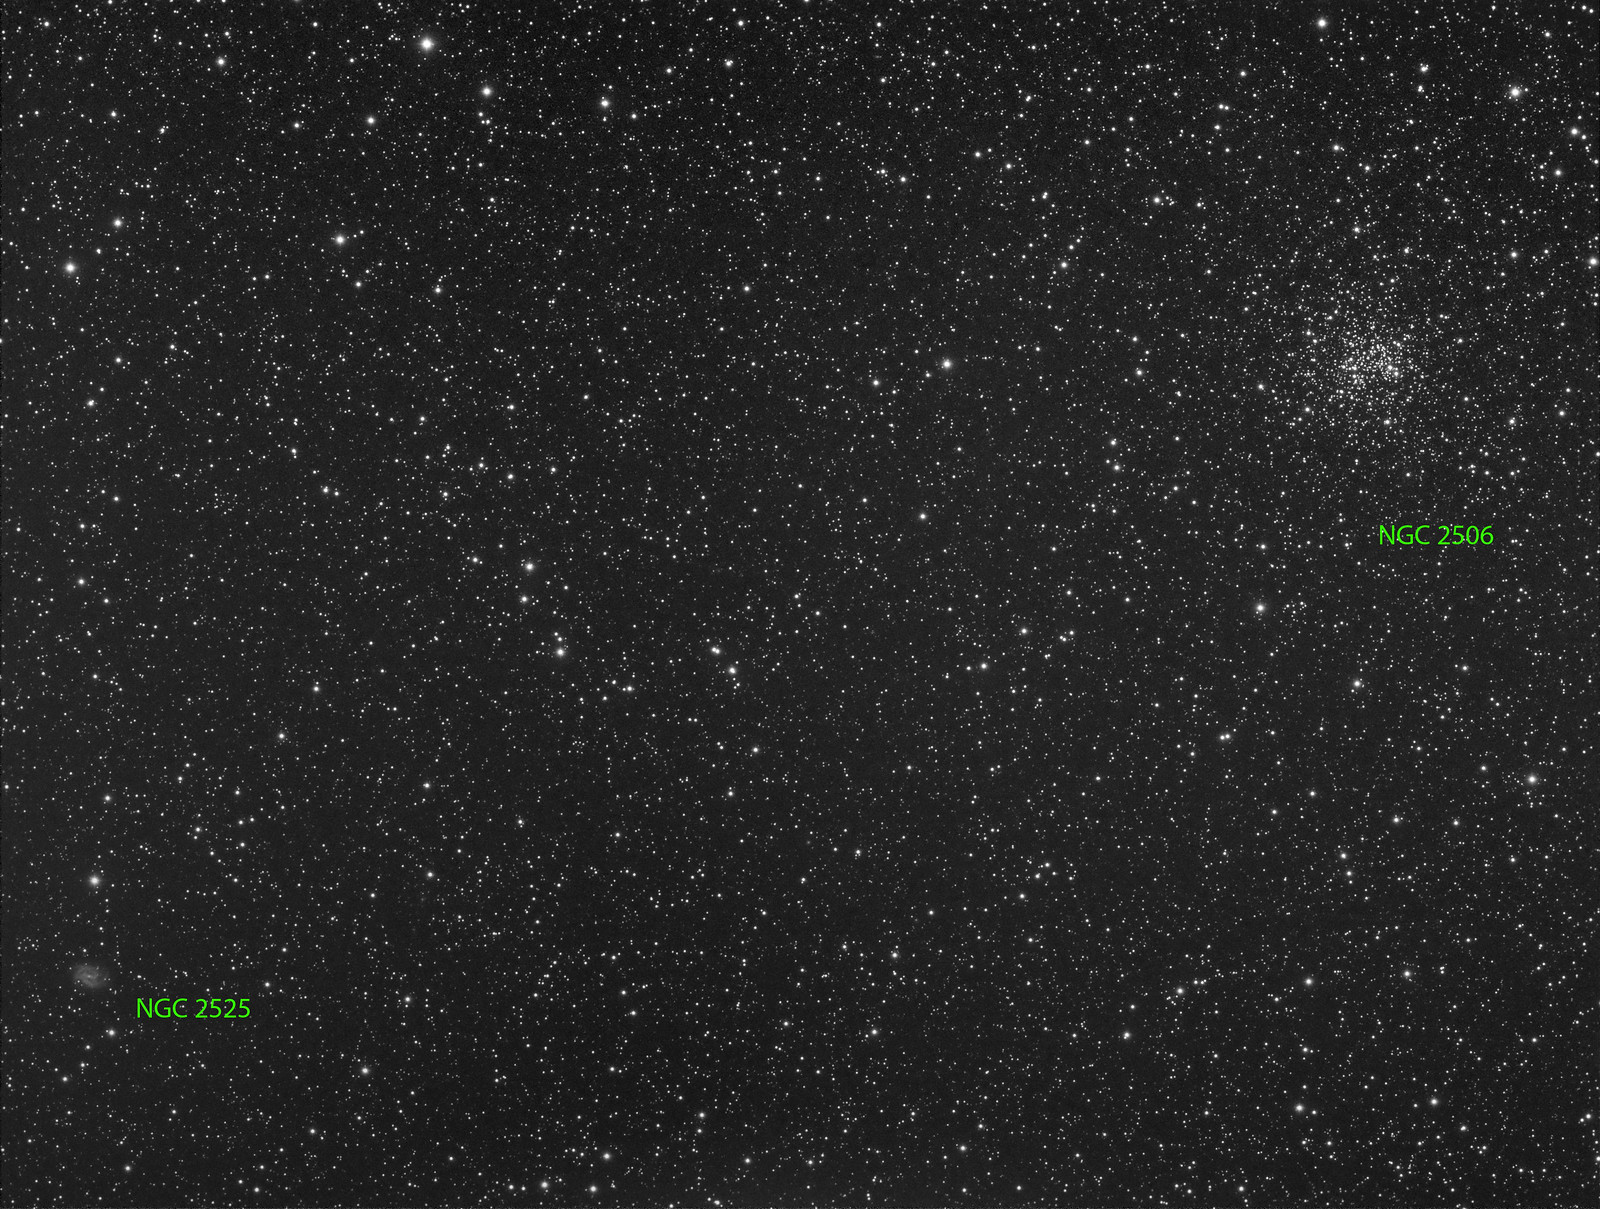 054 - NGC 2506 - Luminance